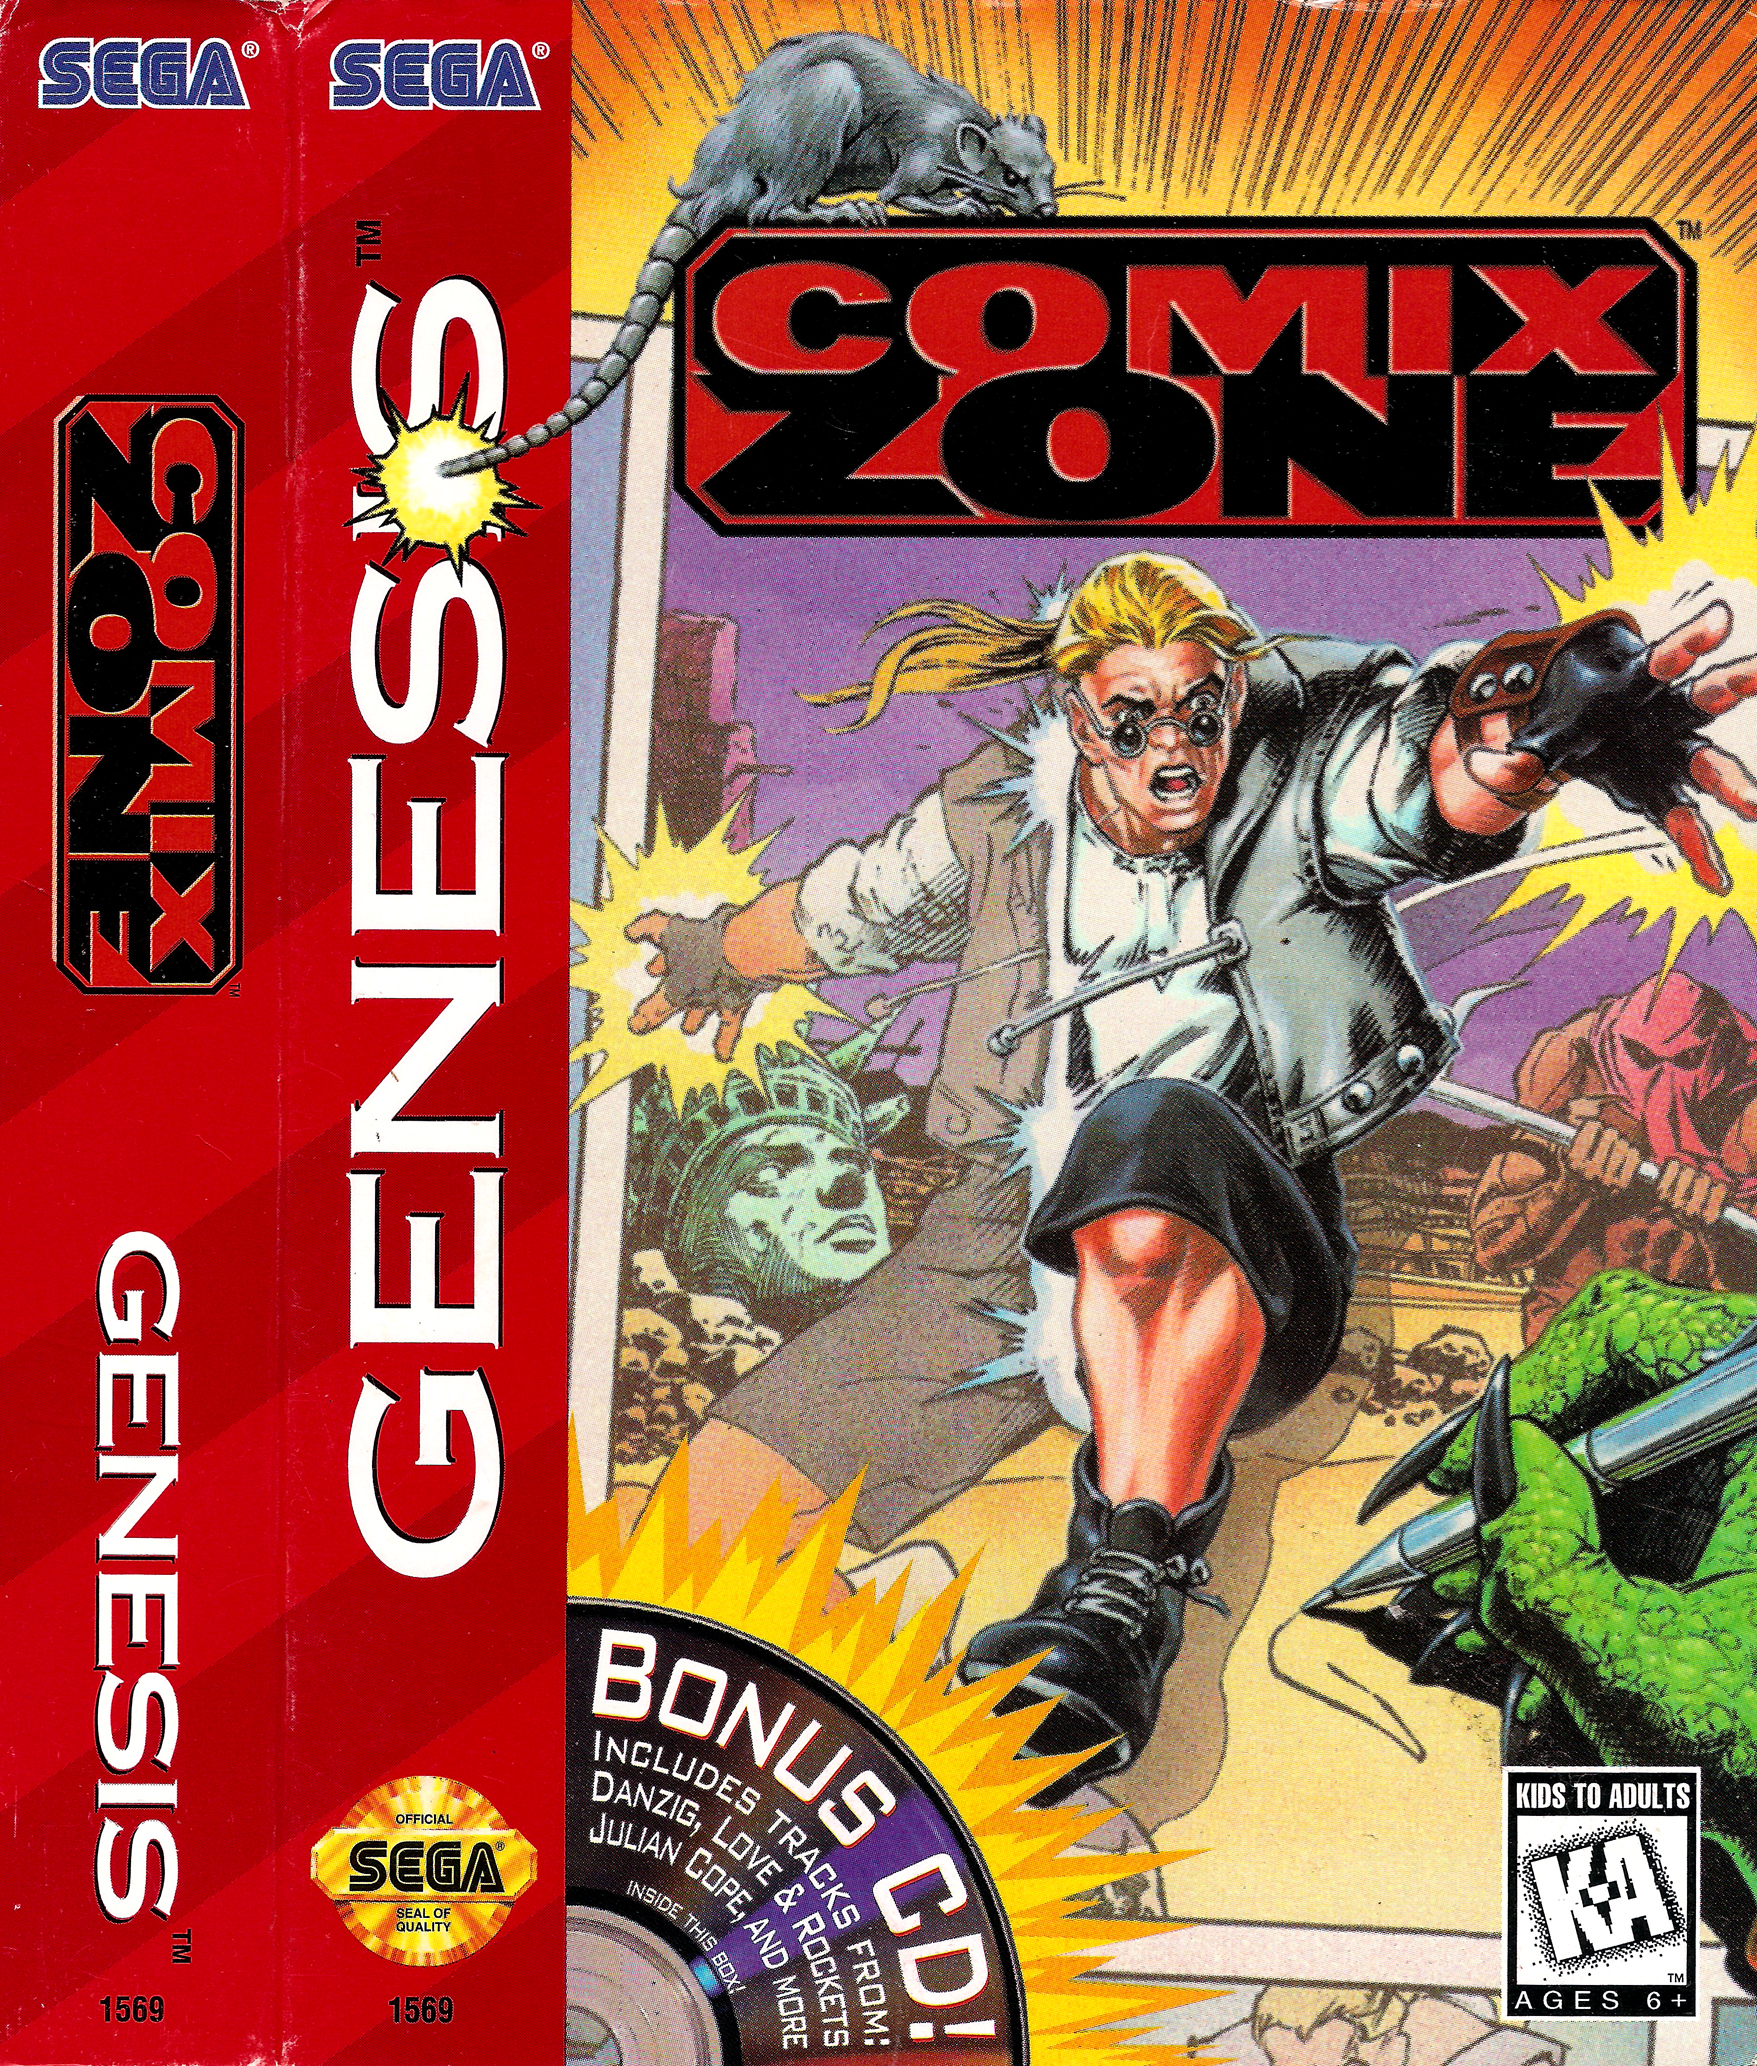 Comix zone ps4. Comix Zone Sega картридж. Комикс зон сега обложка. Sega игра комикс. Игра на сеге комикс зона.